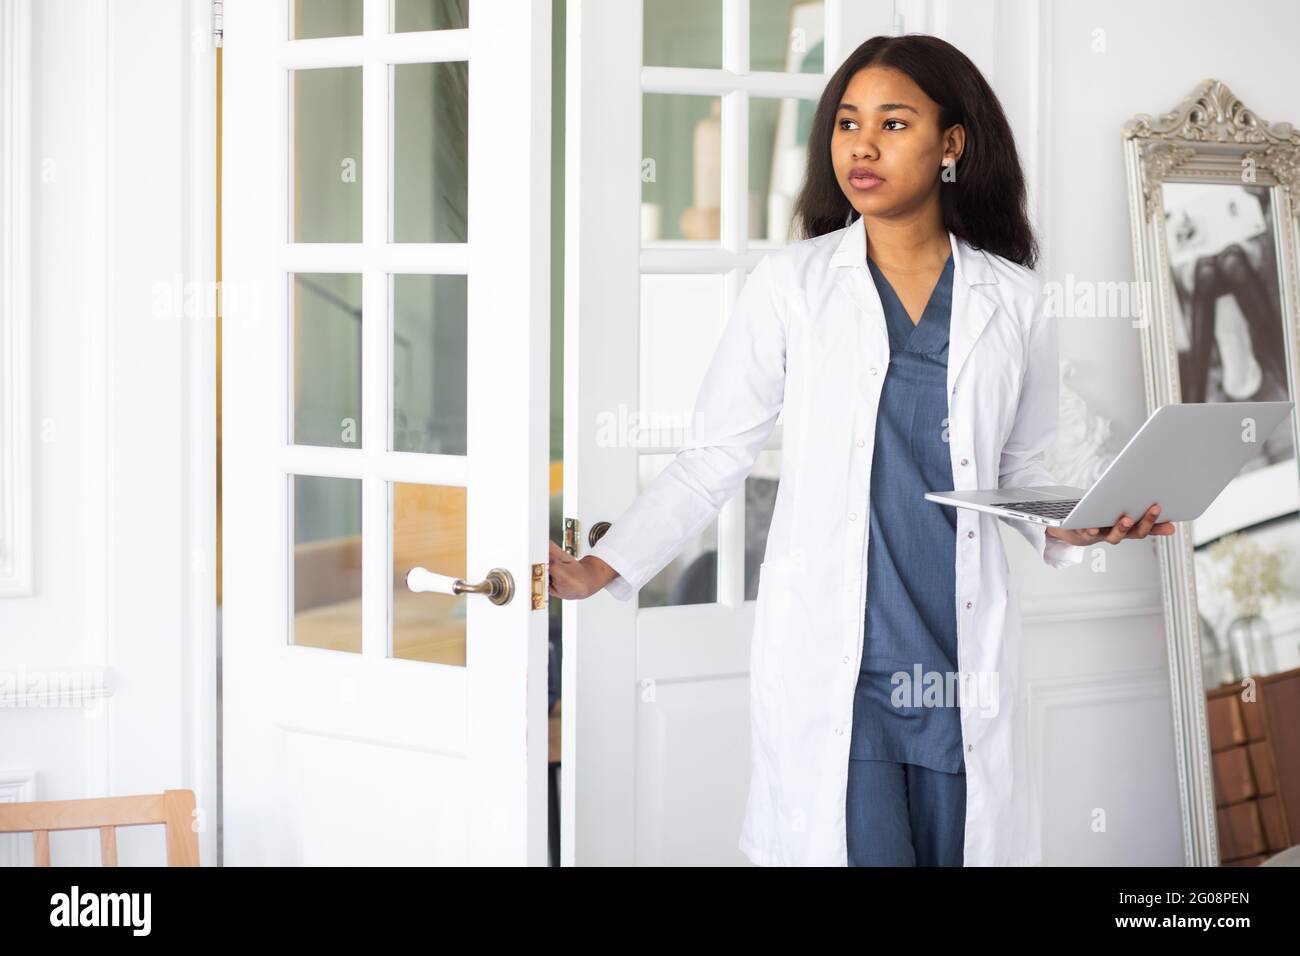 medicina, profesión y concepto de salud - primer plano de la doctora o científica afroamericana Foto de stock